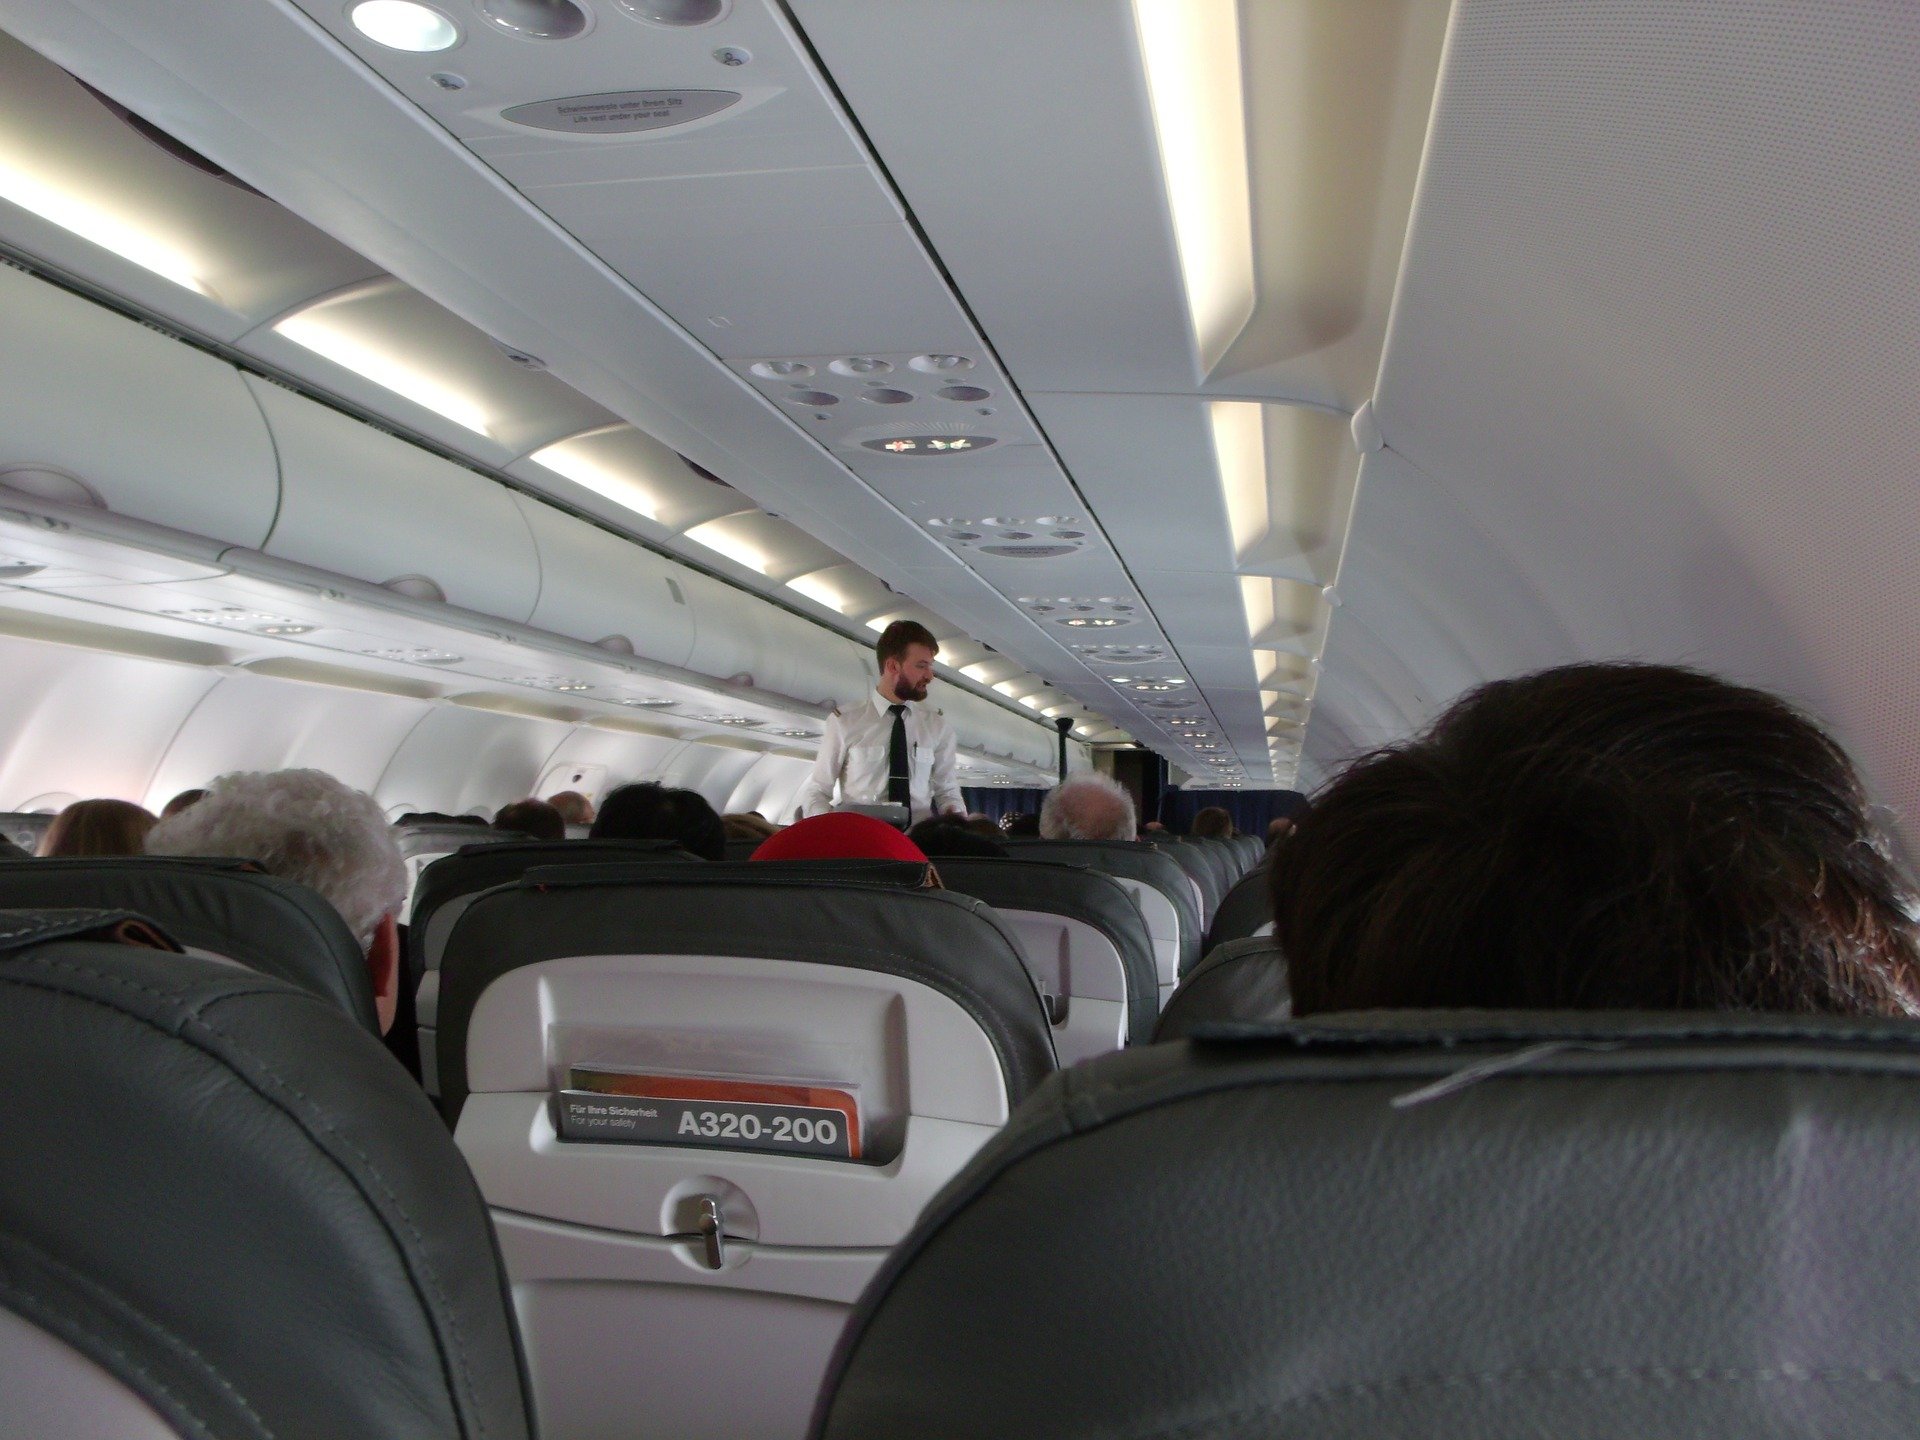 Der Pilot wendet sich an die Passagiere | Quelle: Pexels